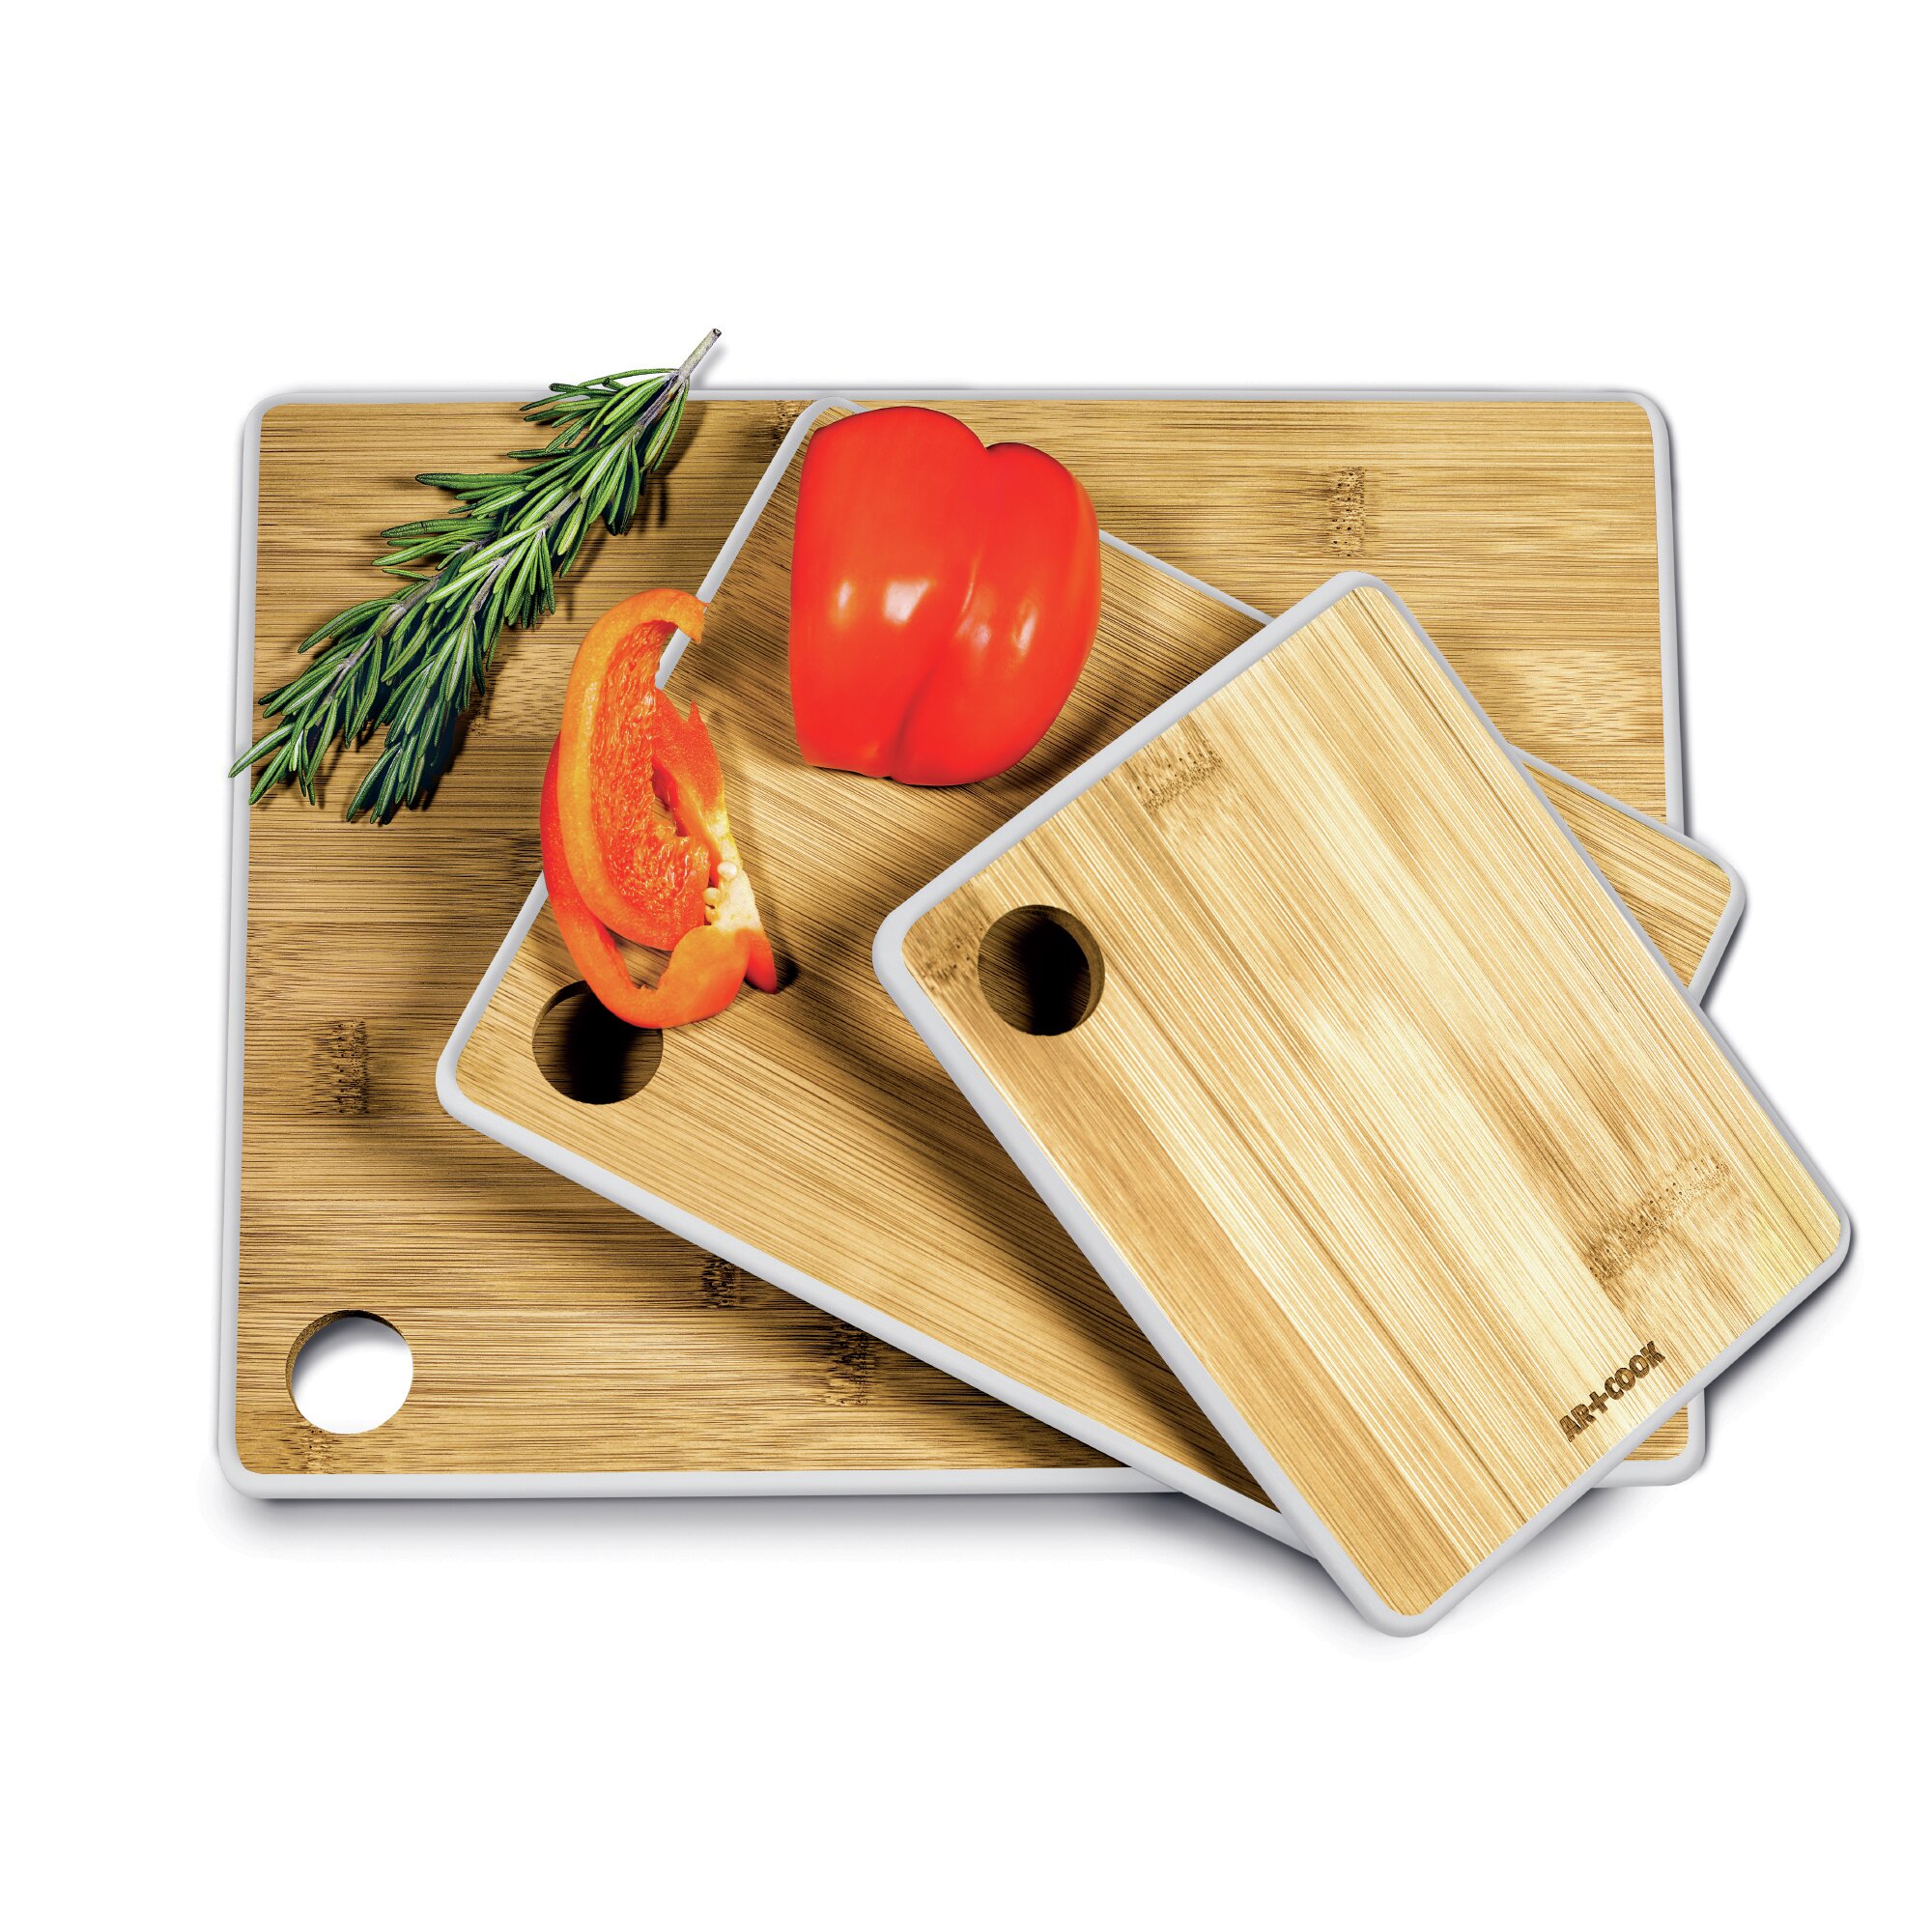 https://assets.wfcdn.com/im/31119840/compr-r85/6490/64902322/art-and-cook-3-piece-bamboo-cutting-board-set.jpg